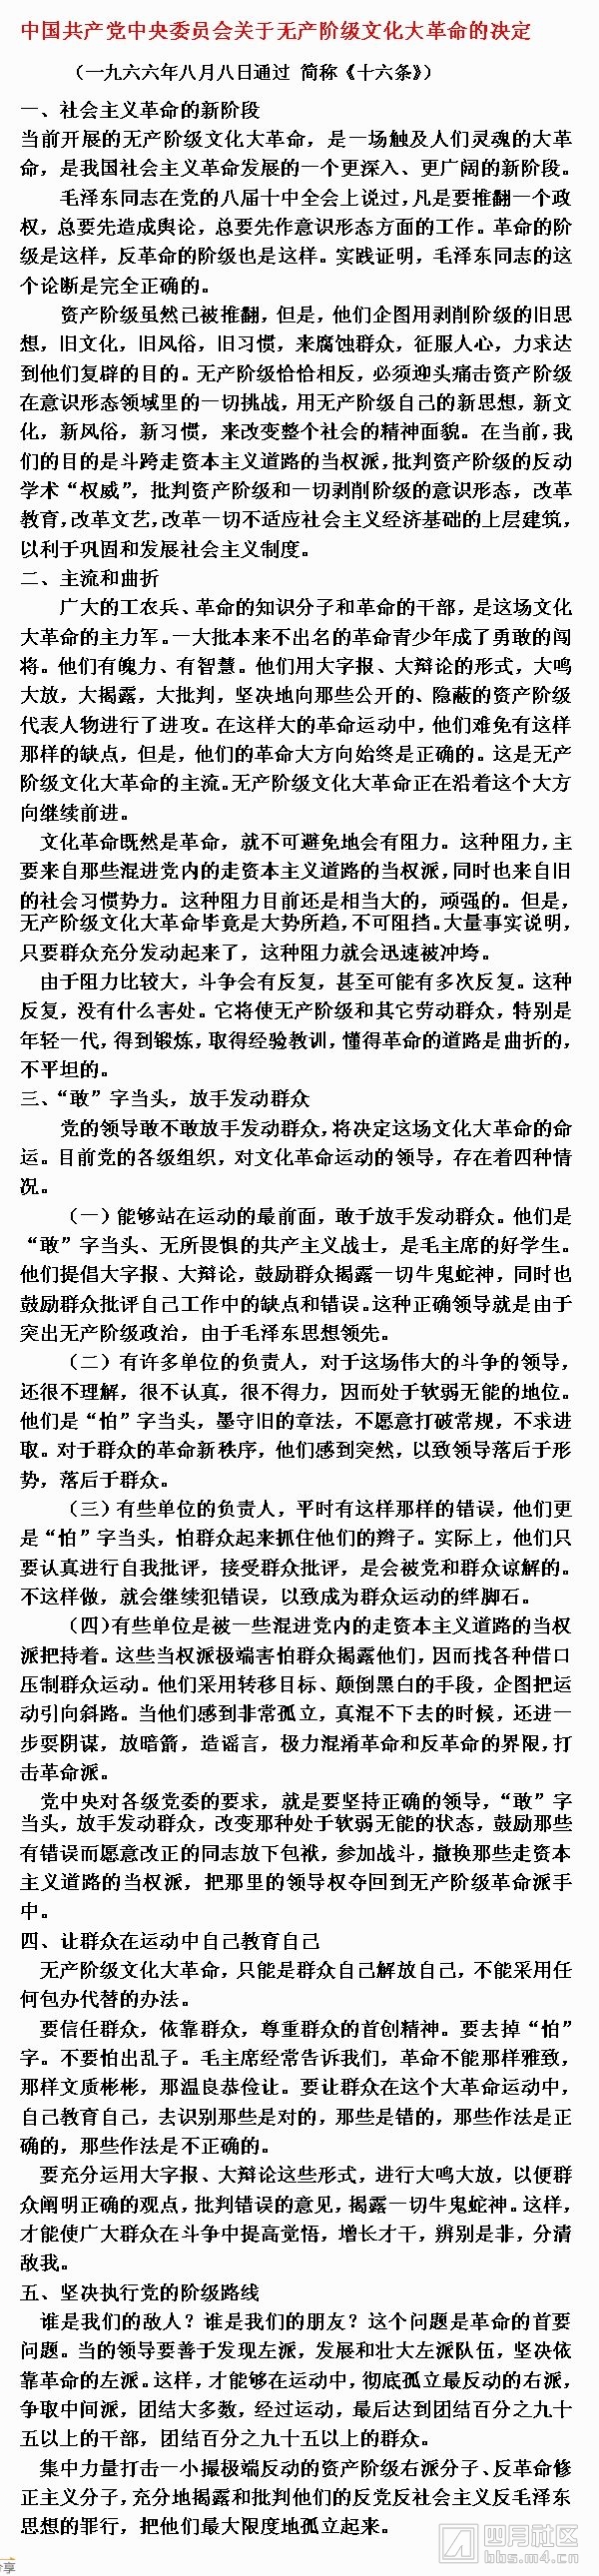 1中国共产党中央委员会关于无产阶级文化大革命的决定.jpg